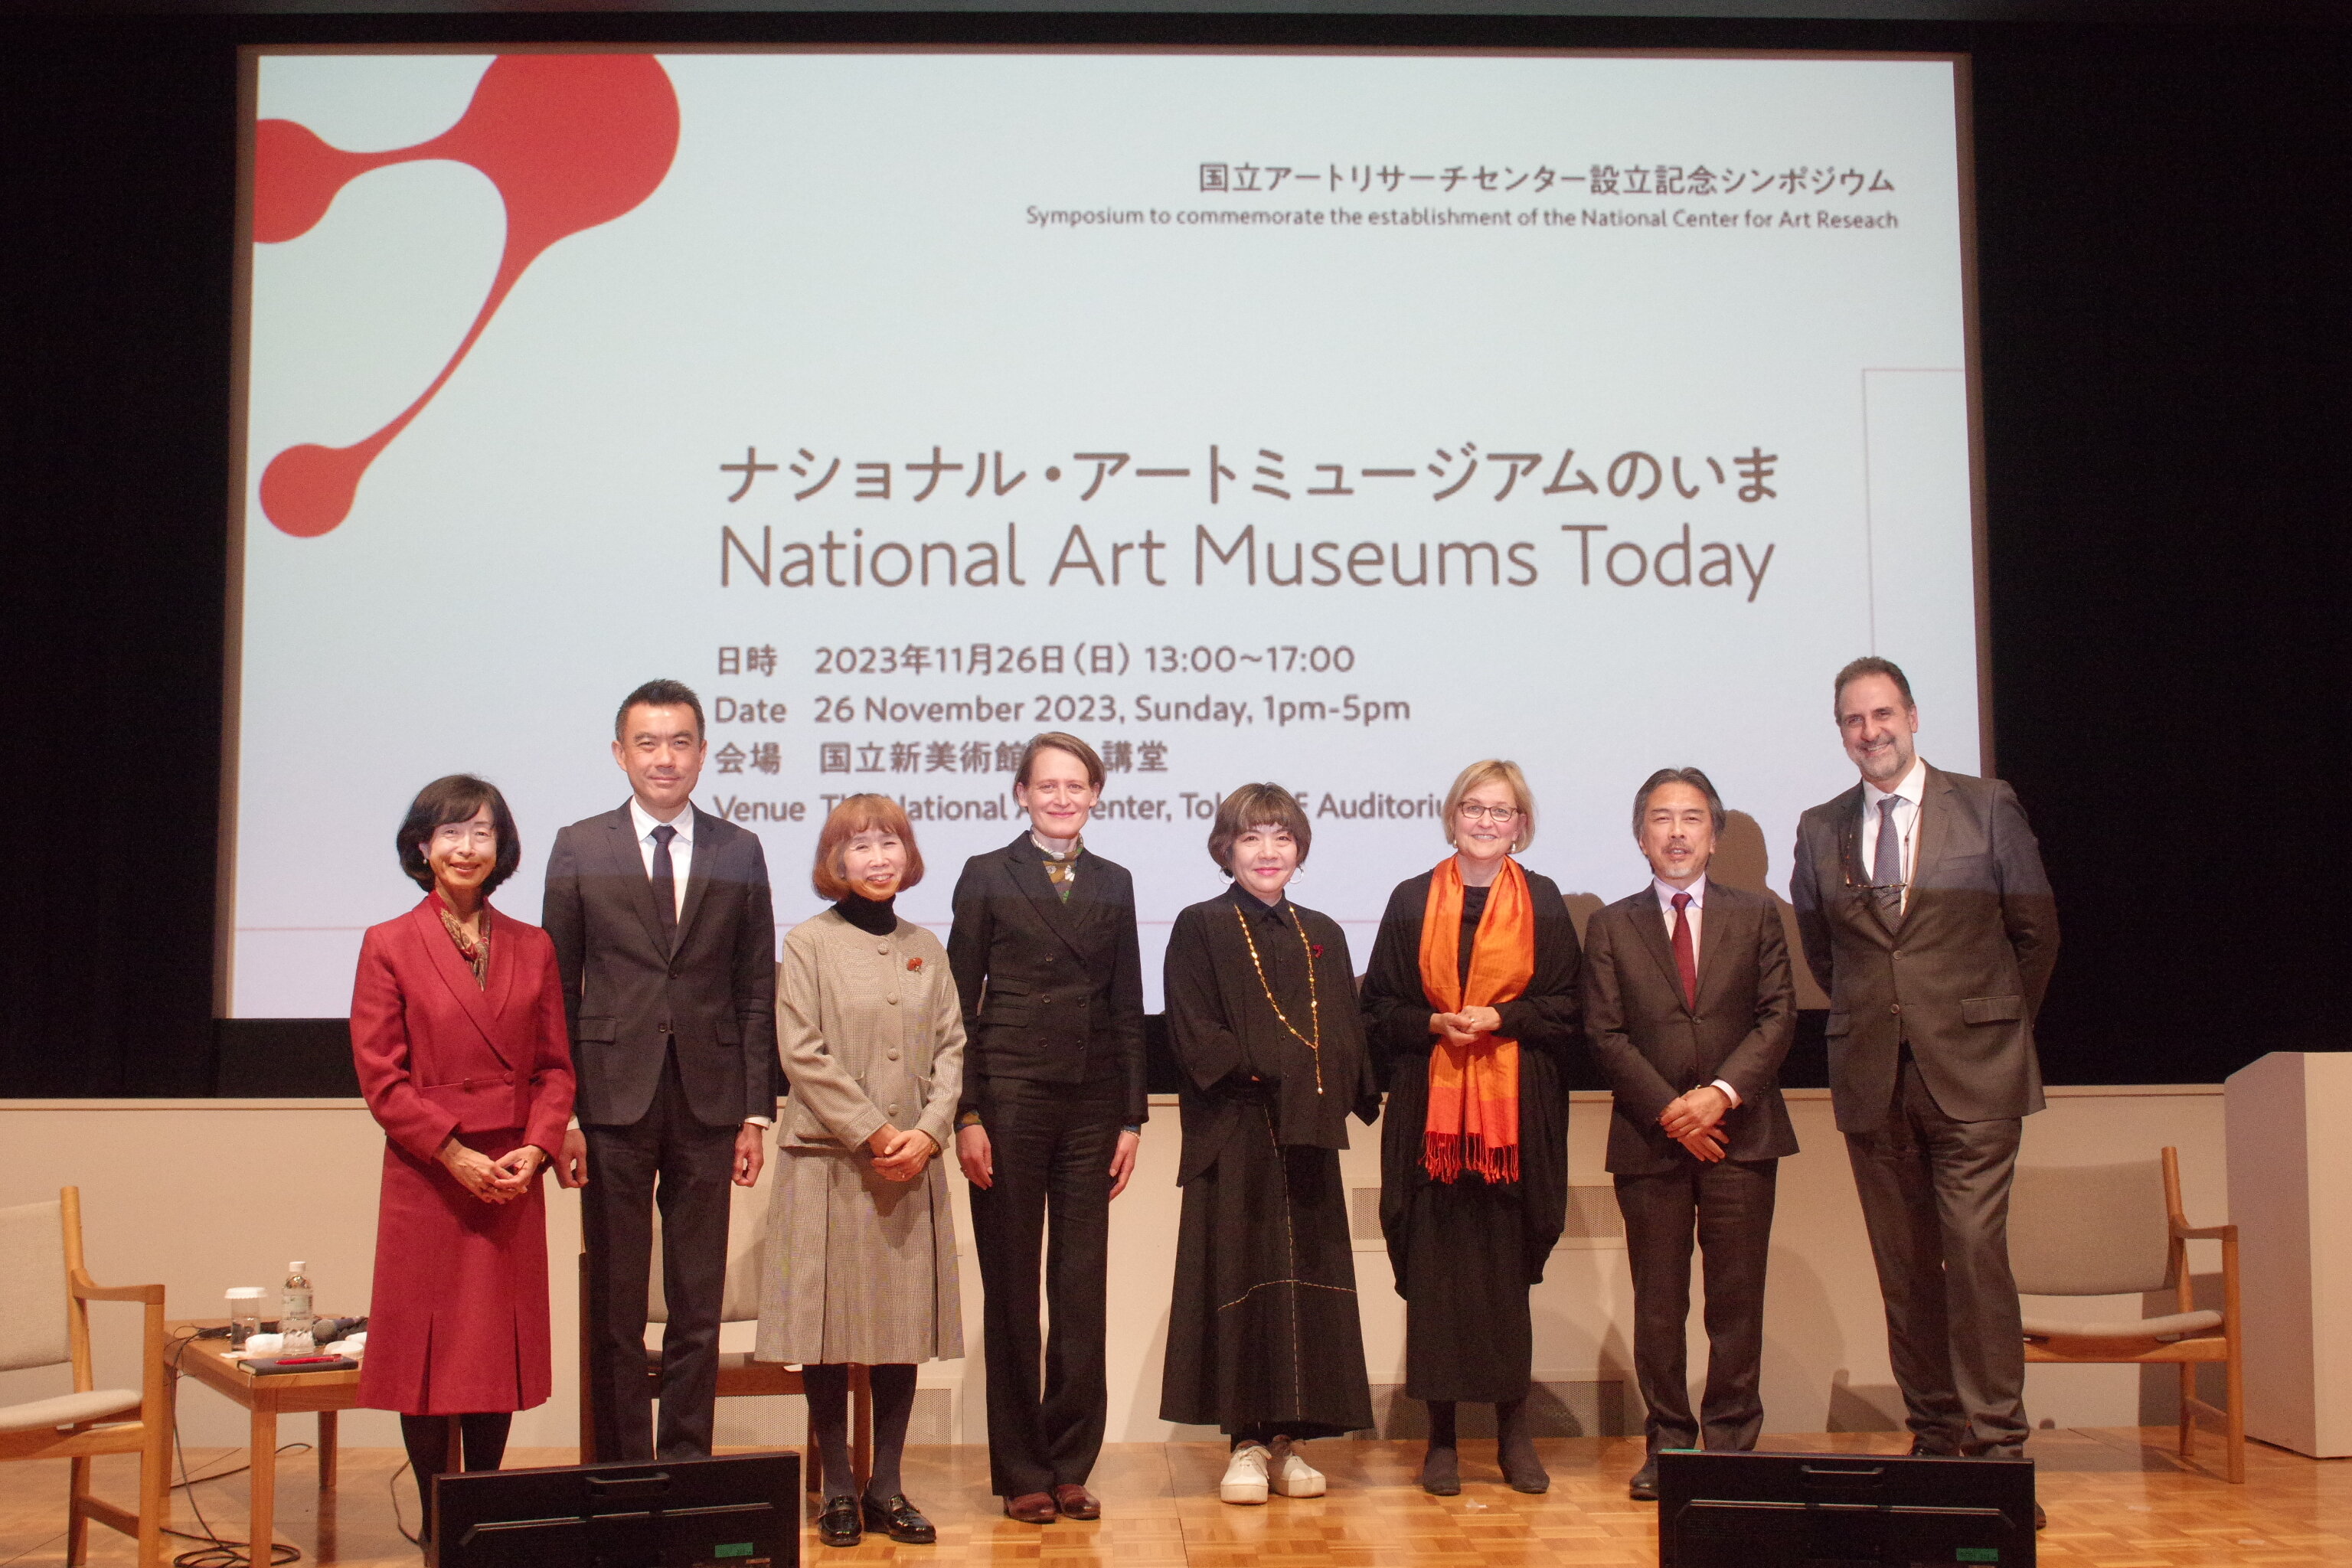 【シンポジウム開催報告】国立アートリサーチセンター設立記念シンポジウム 「ナショナル・アートミュージアムのいま」（2023年11月26日開催）
